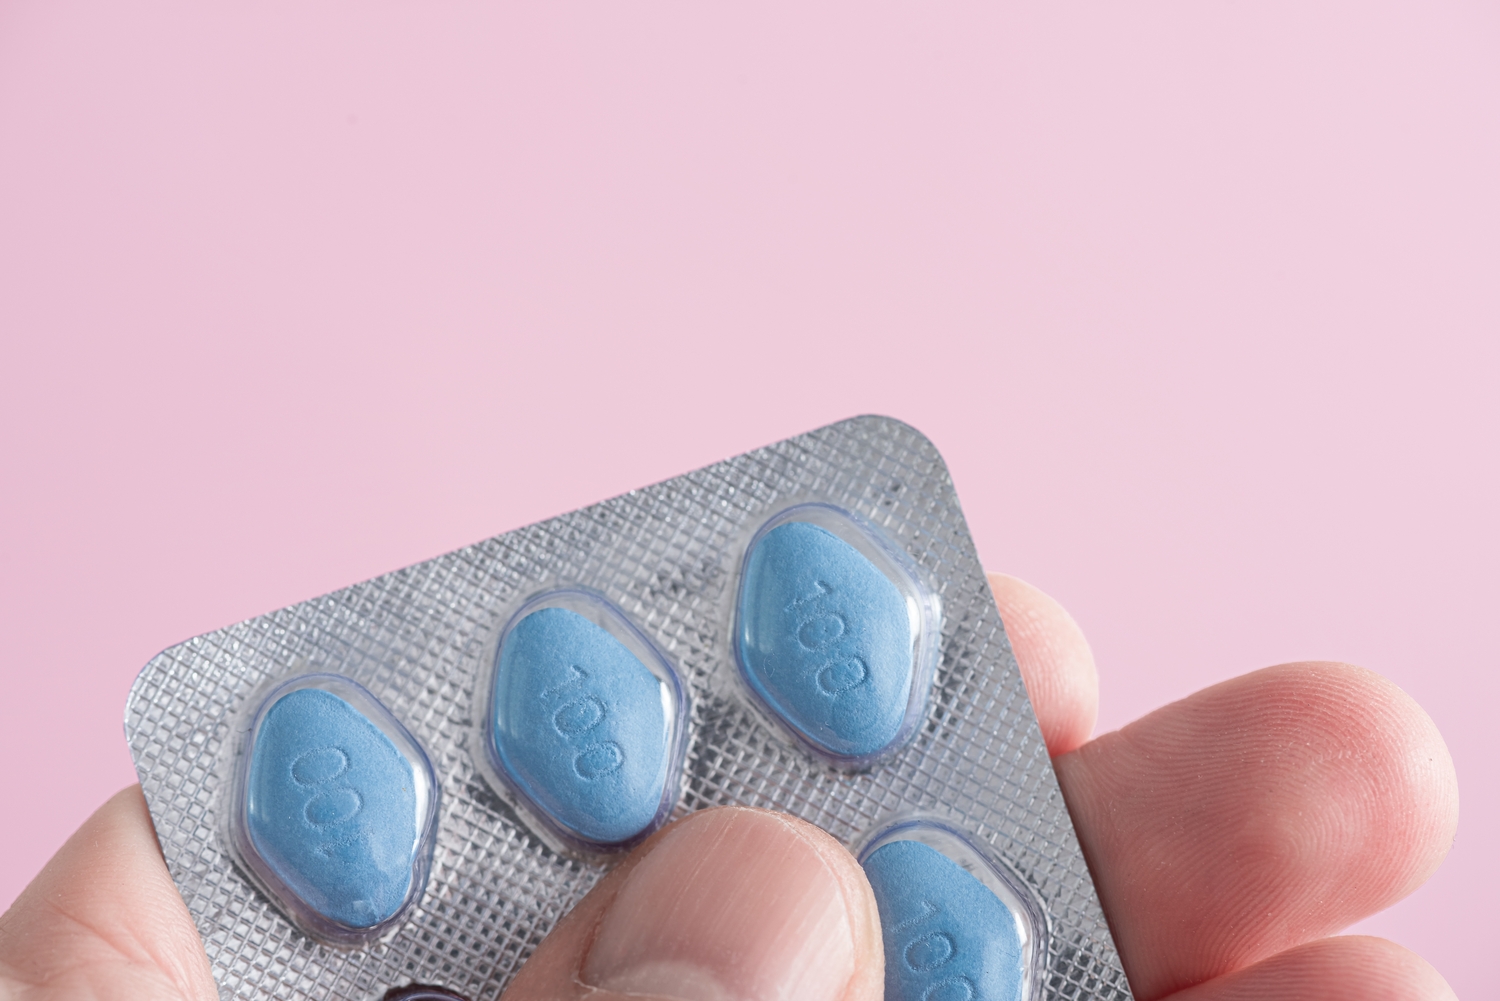 Le Viagra réduit le risque de démence chez les seniors selon une étude